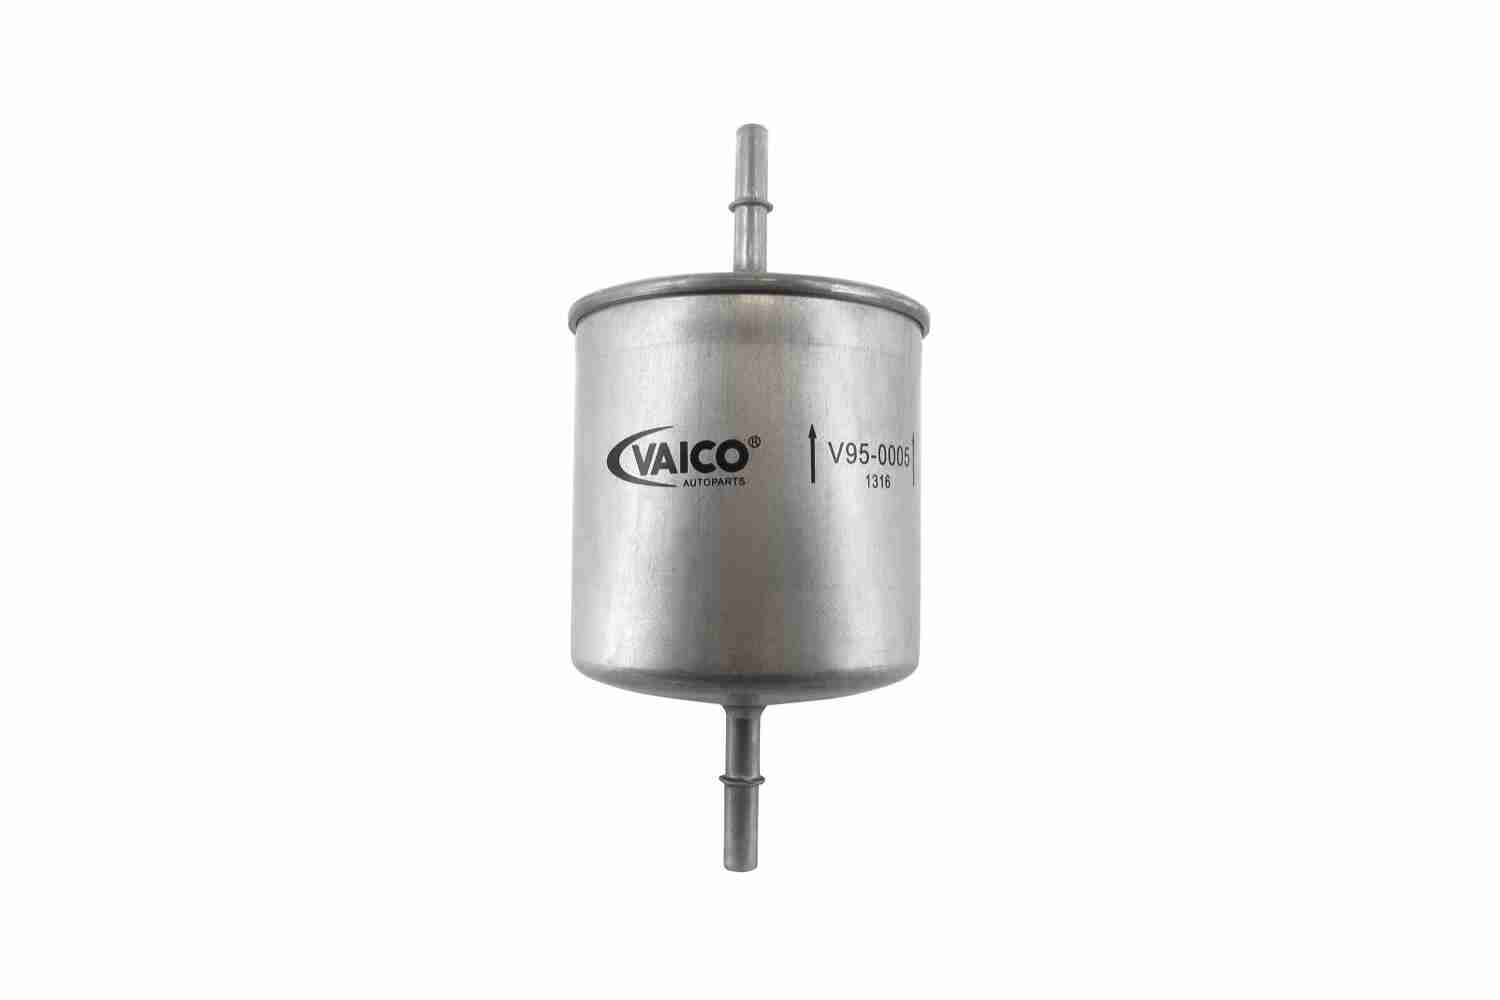 VAICO V95-0005 palivovy filtr